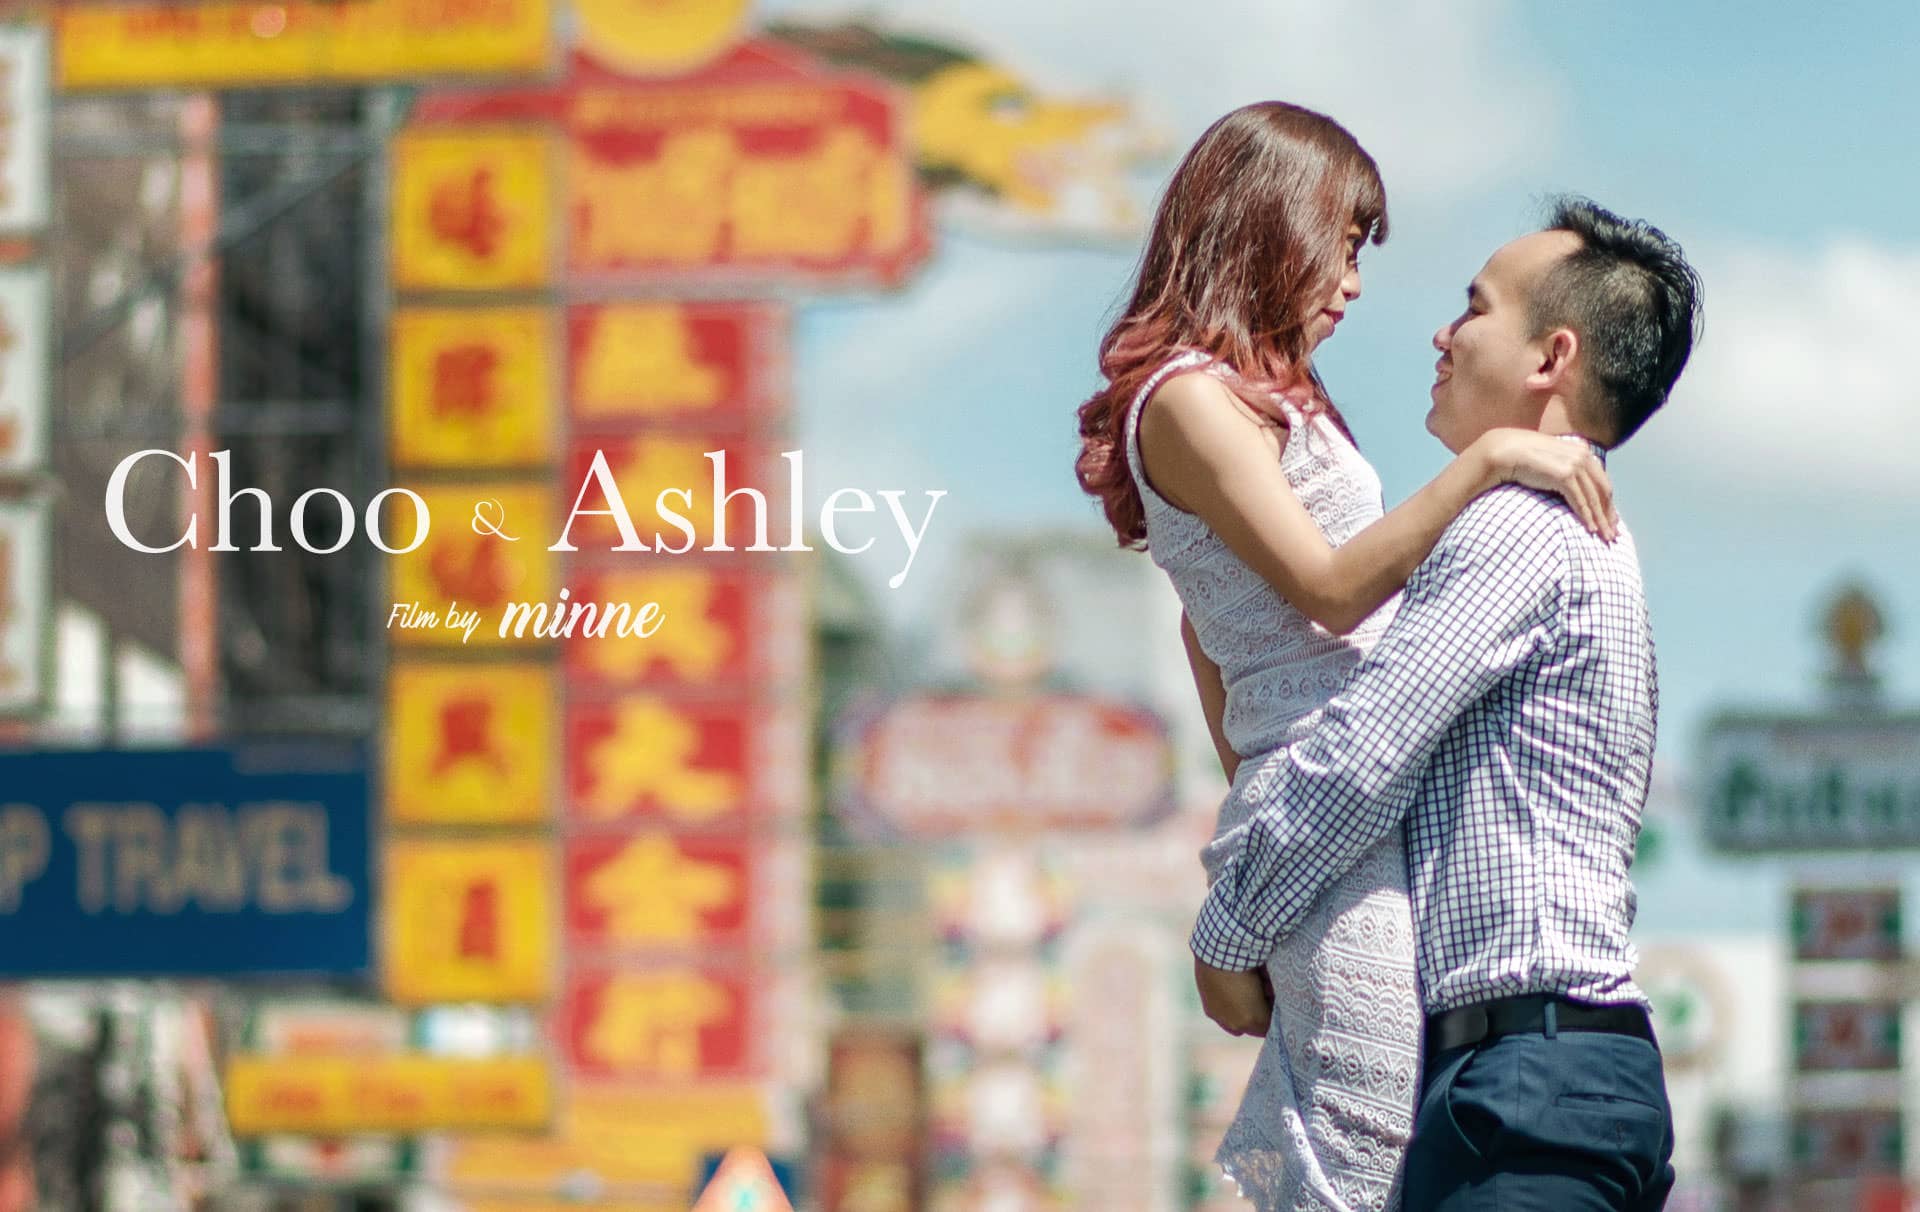 Prewedding Film Choo & Ashley, Bangkok Thailand